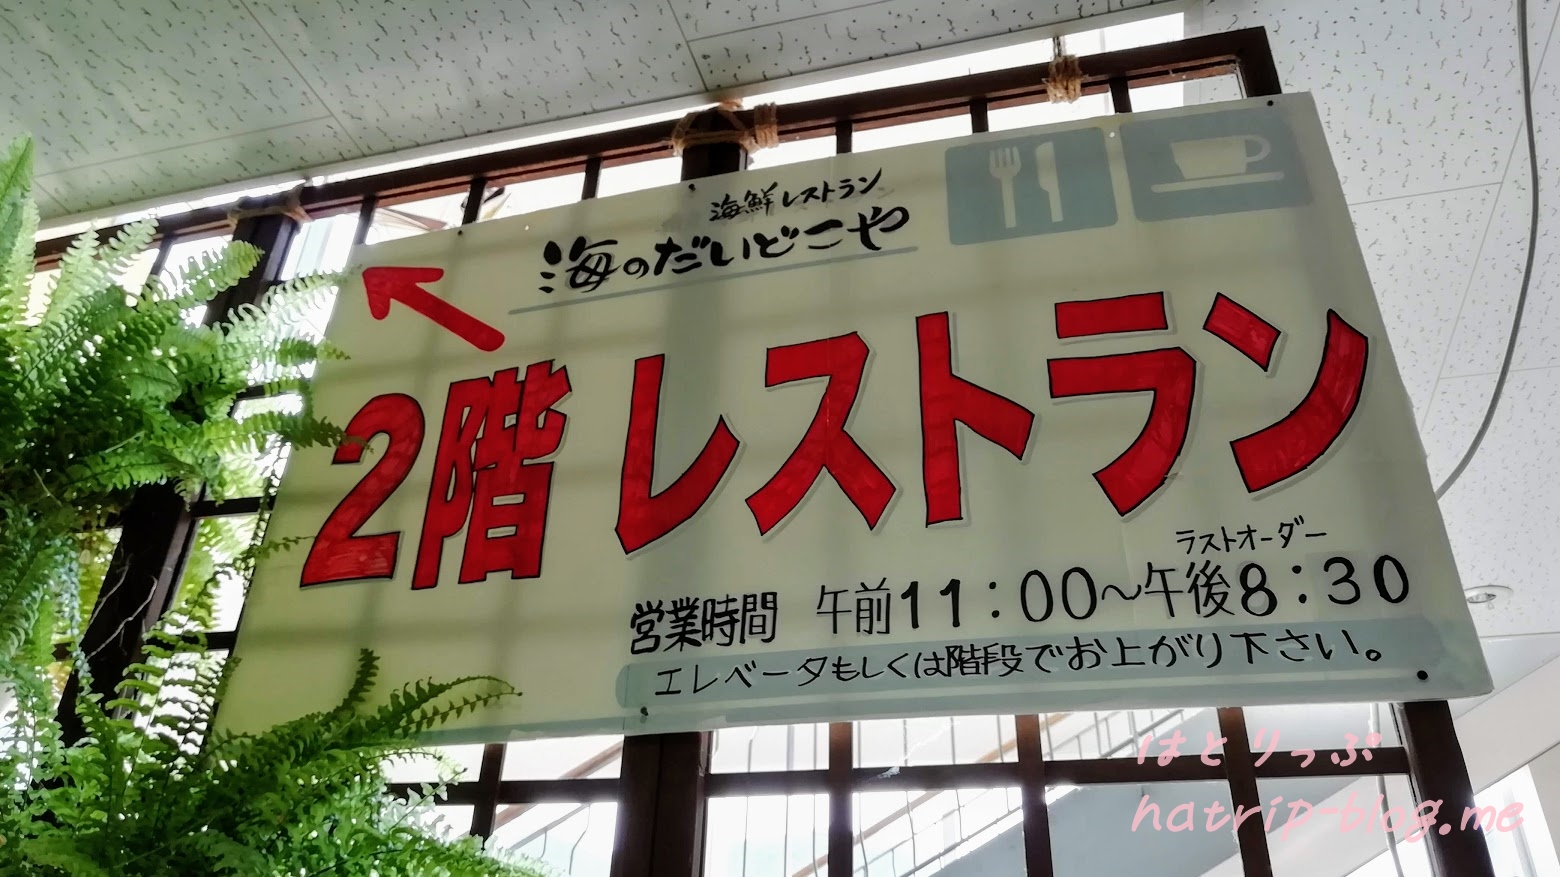 新潟県上越市 道の駅 うみてらす名立 海鮮レストラン 海のだいどこや